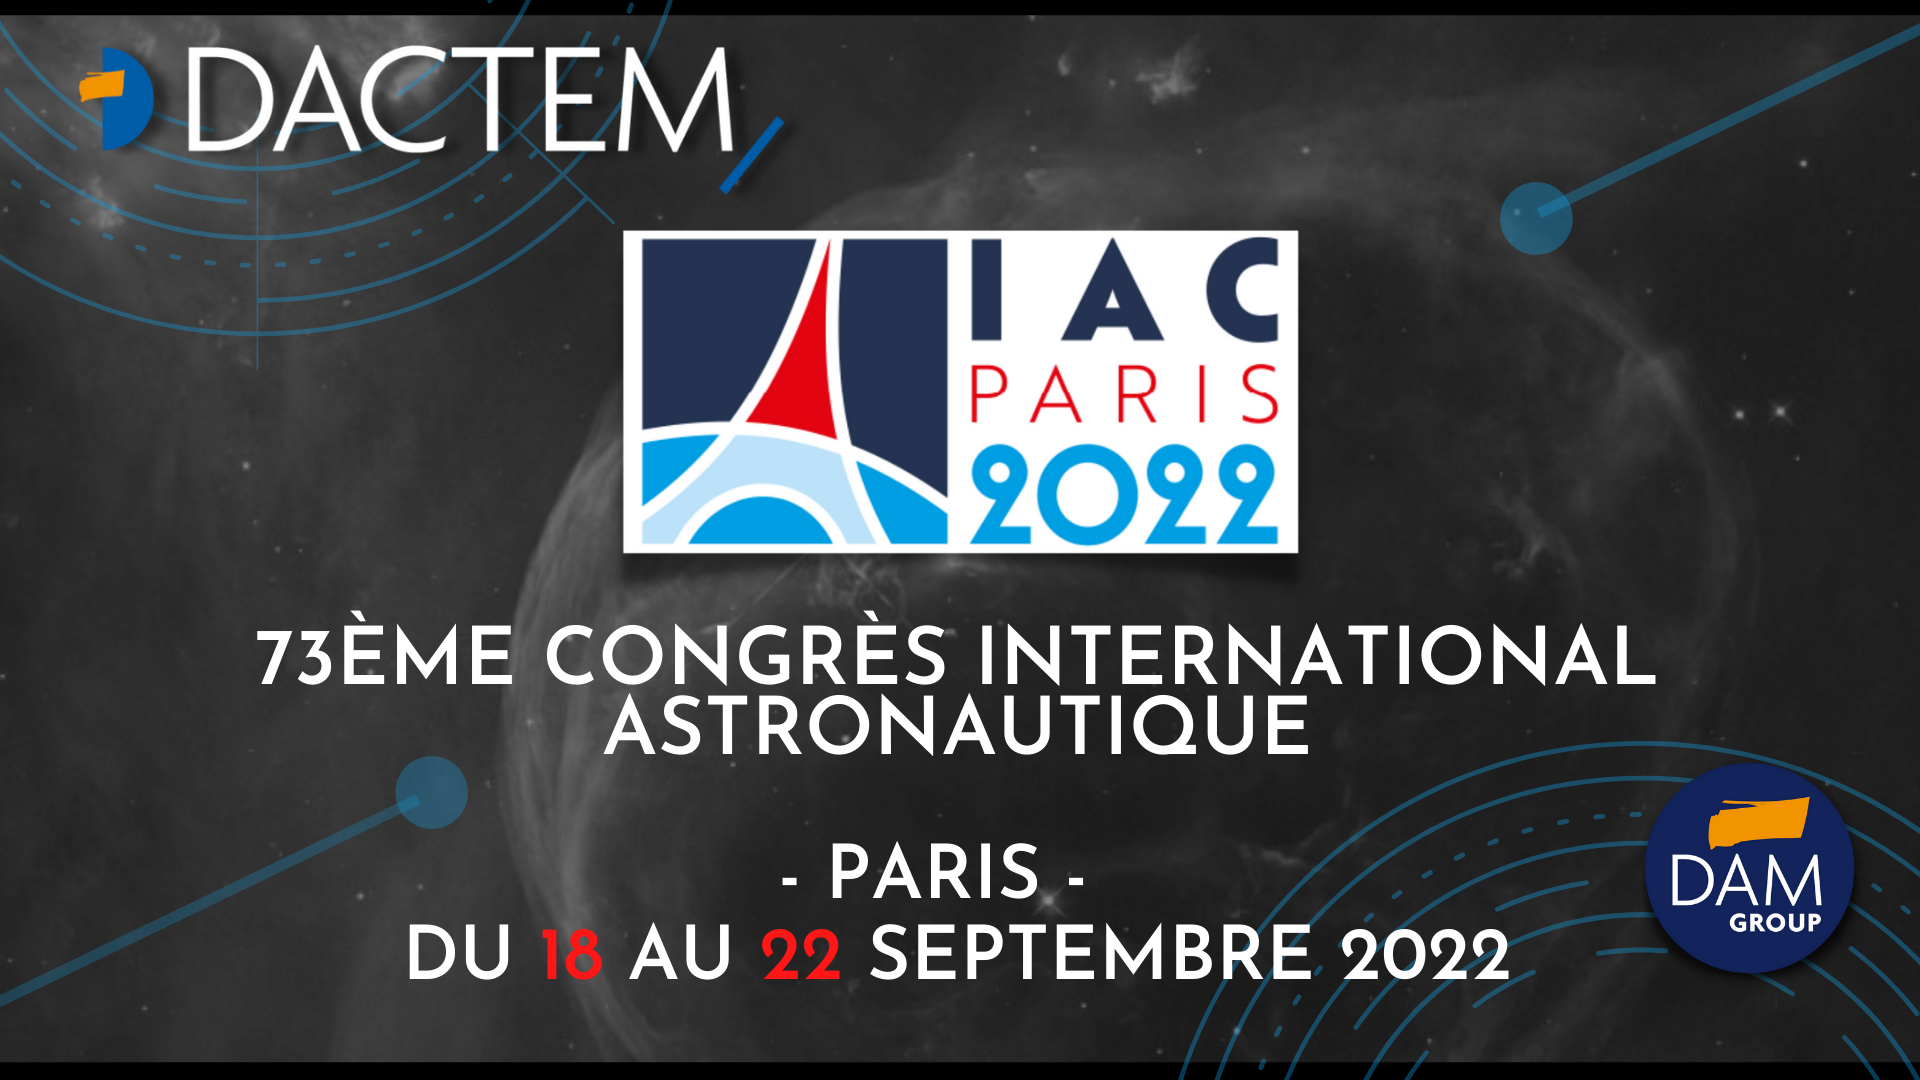 DACTEM SERA PRESENT AU 73EME CONGRES INTERNATIONAL ASTRONOMIQUE DE PARIS (IAC PARIS 2022)